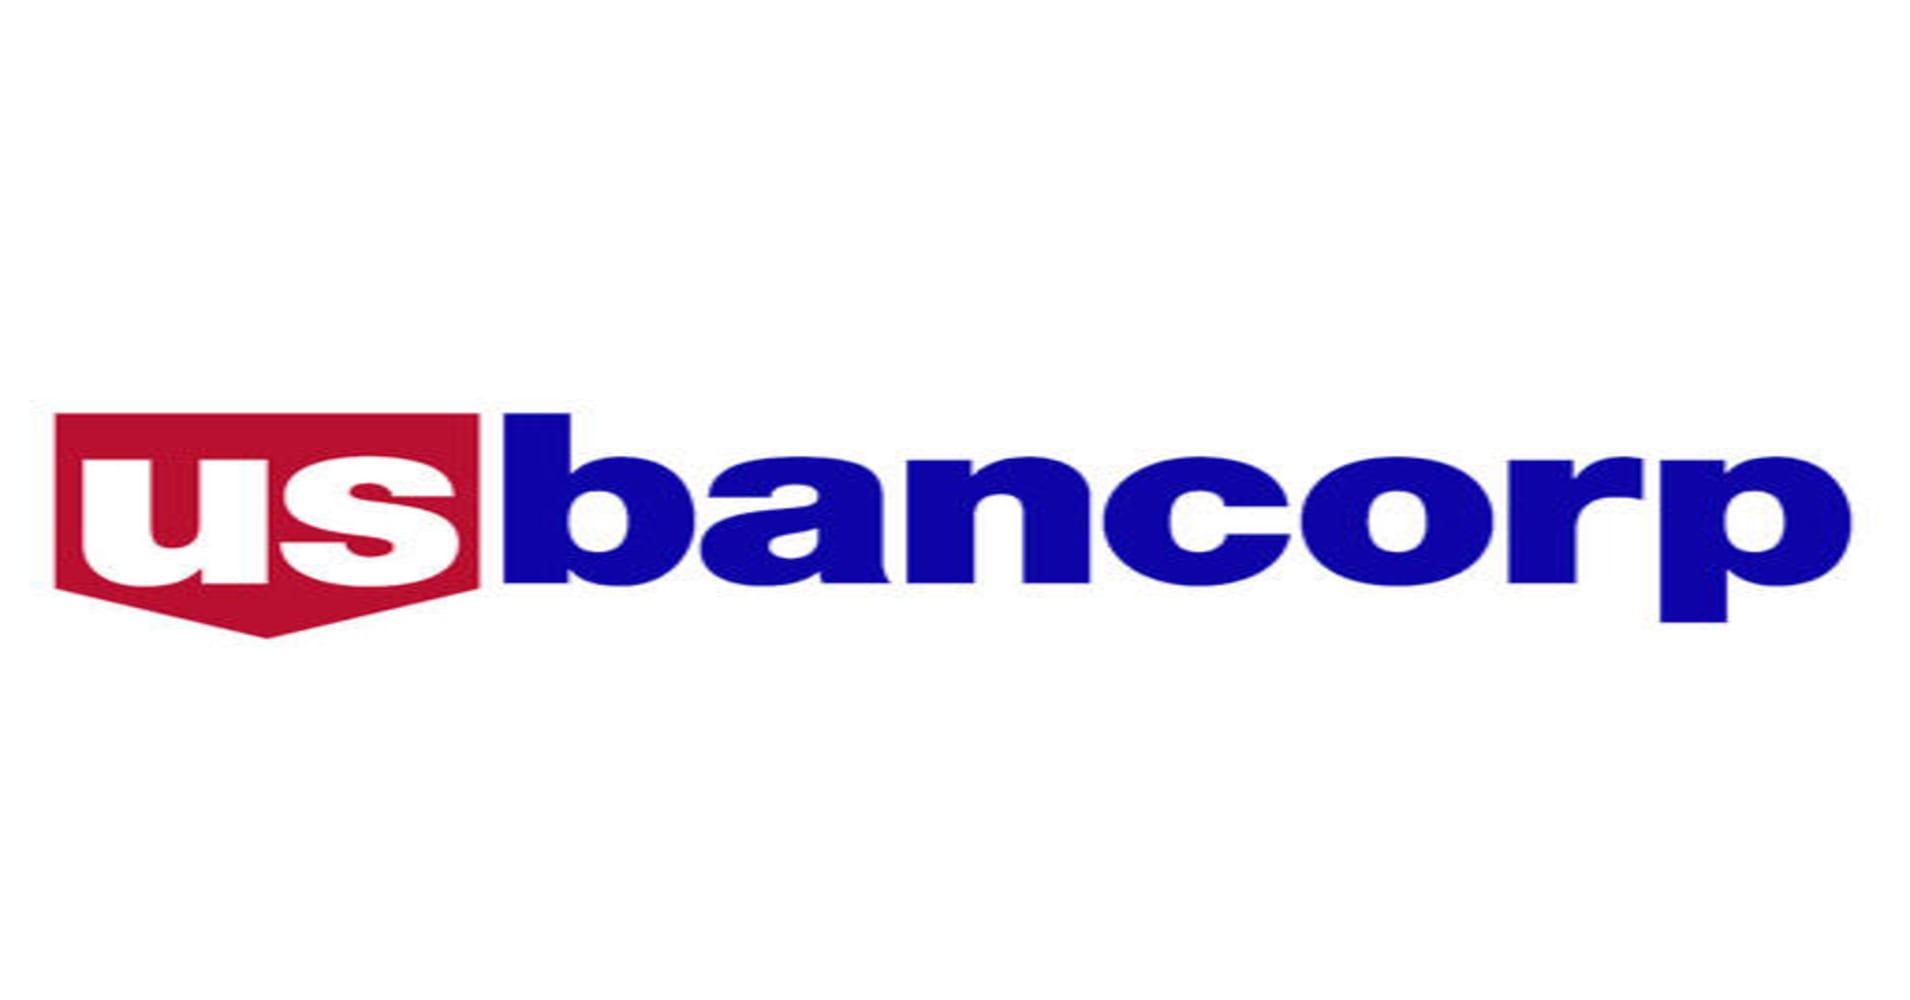 Bancorp